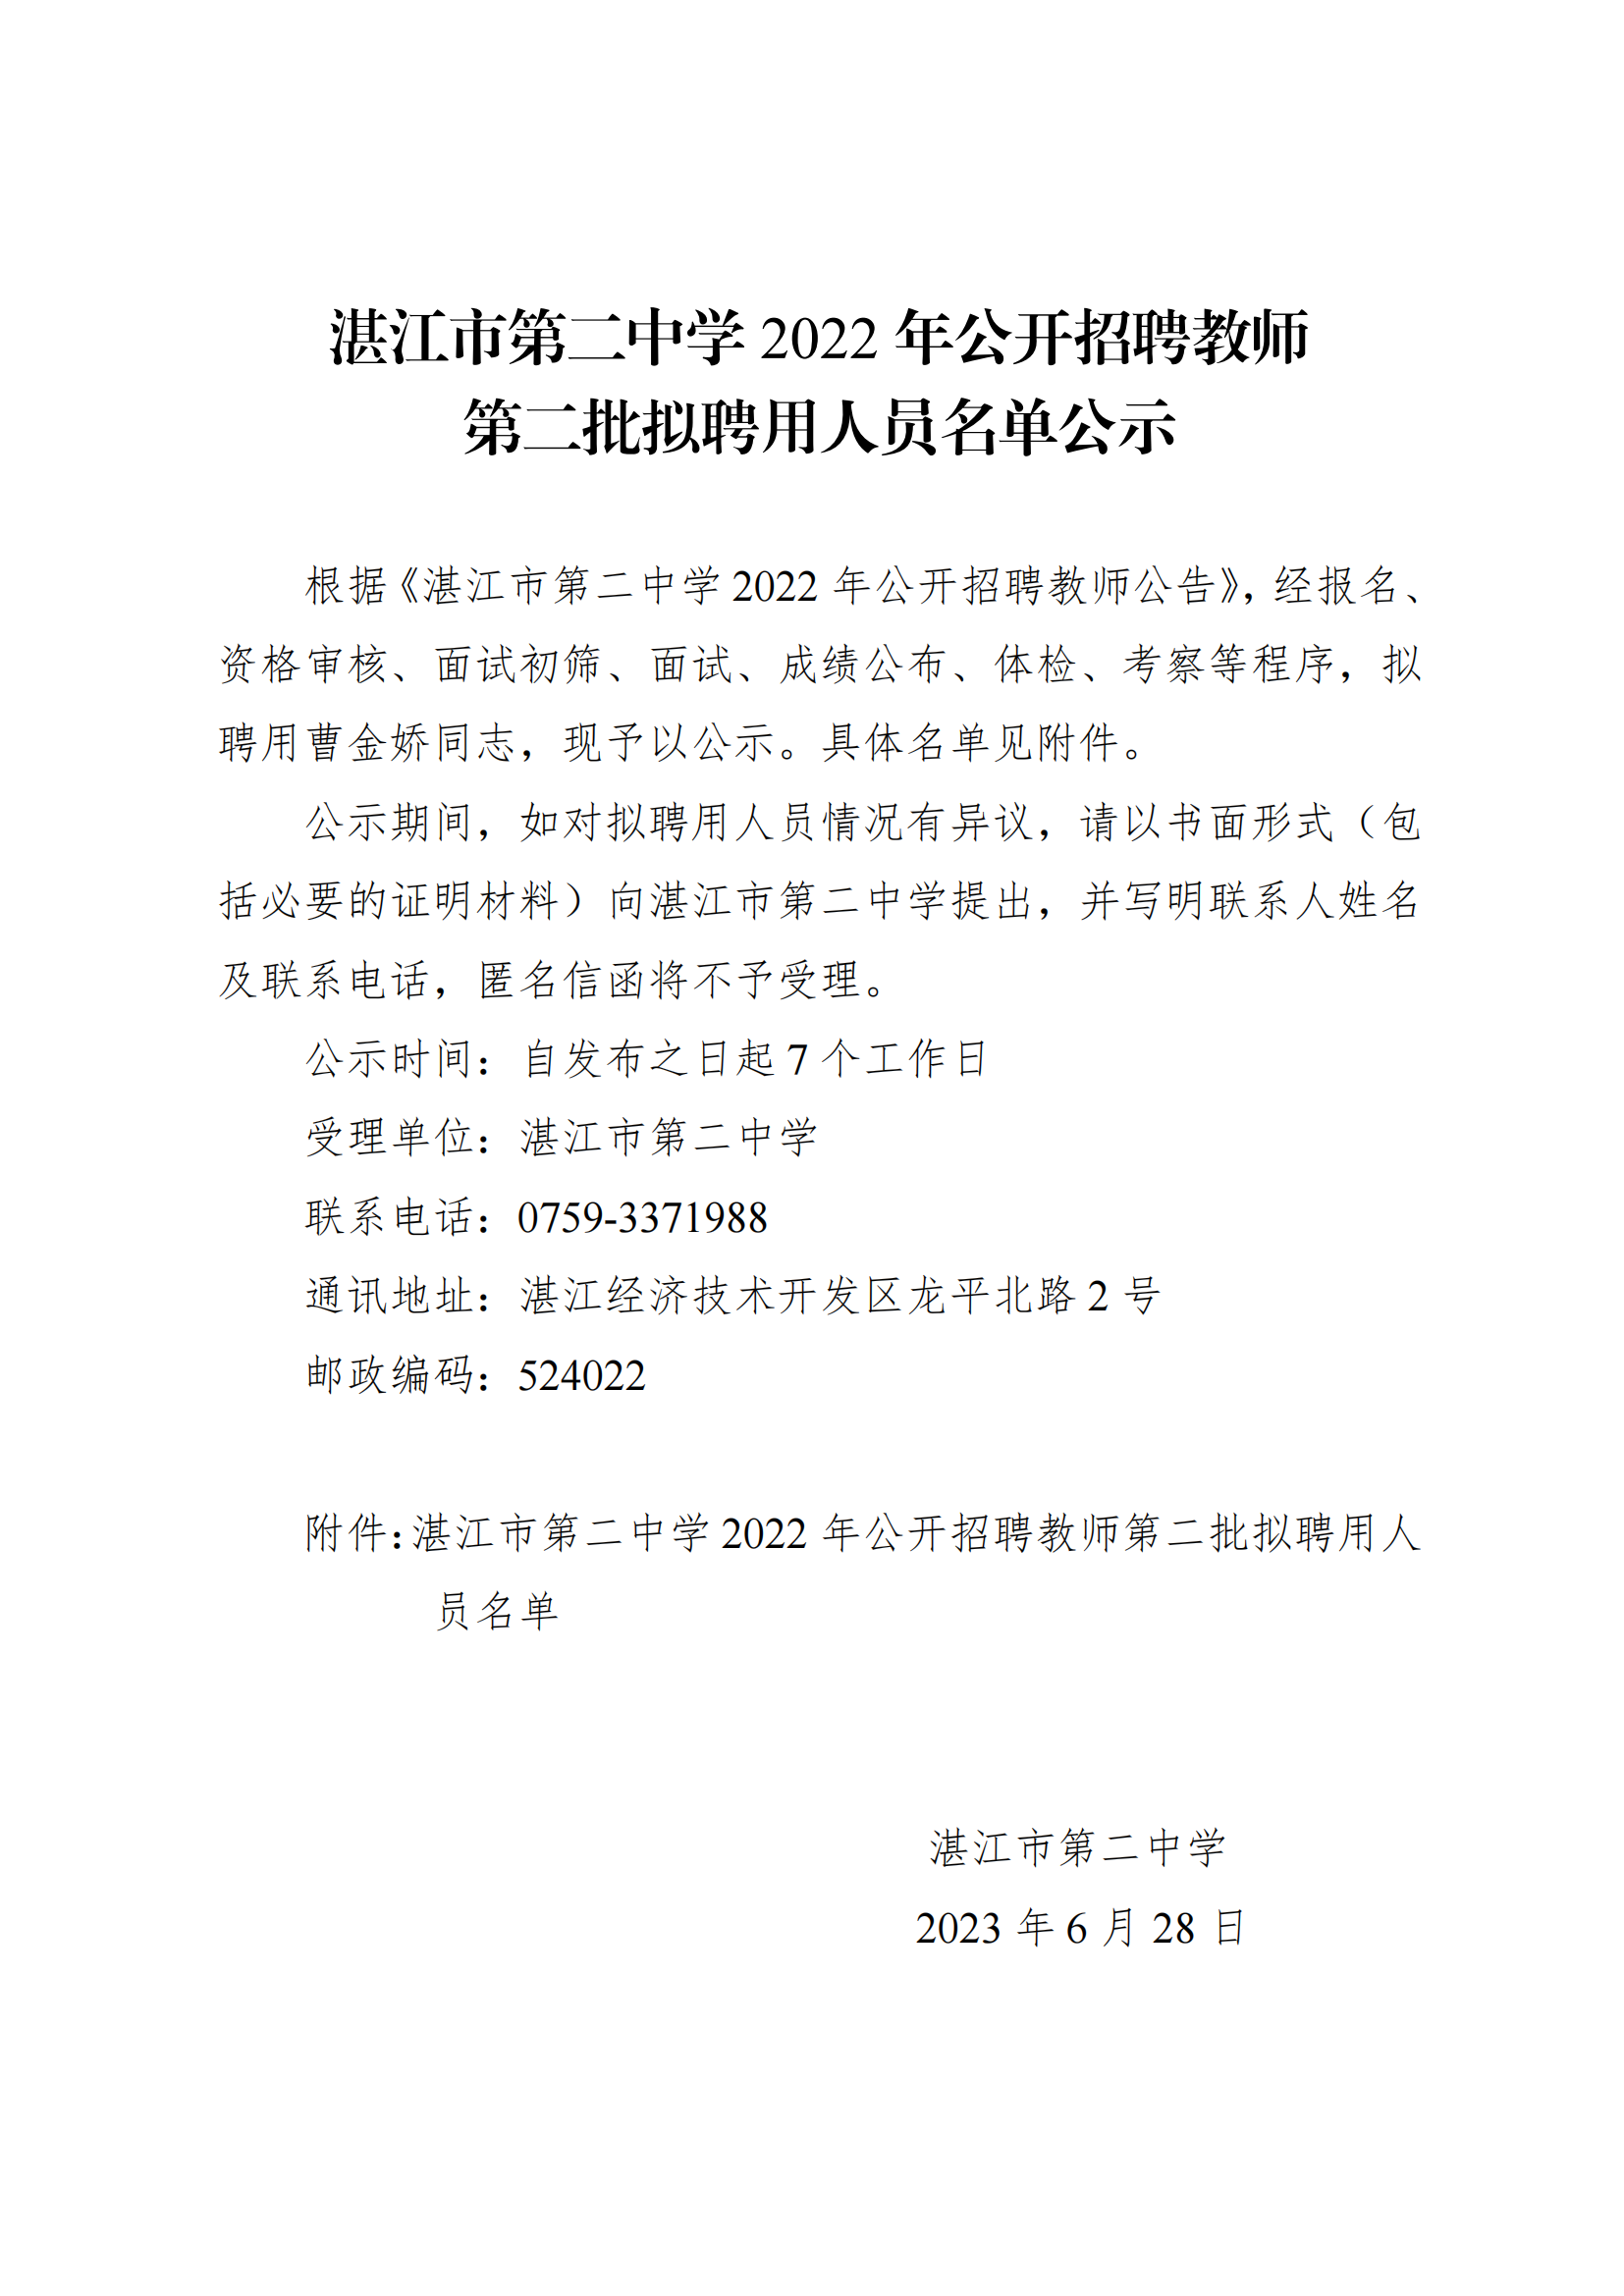 湛江市第二中学2022年公开招聘教师第二批拟聘用人员名单公示(终版)_00.png